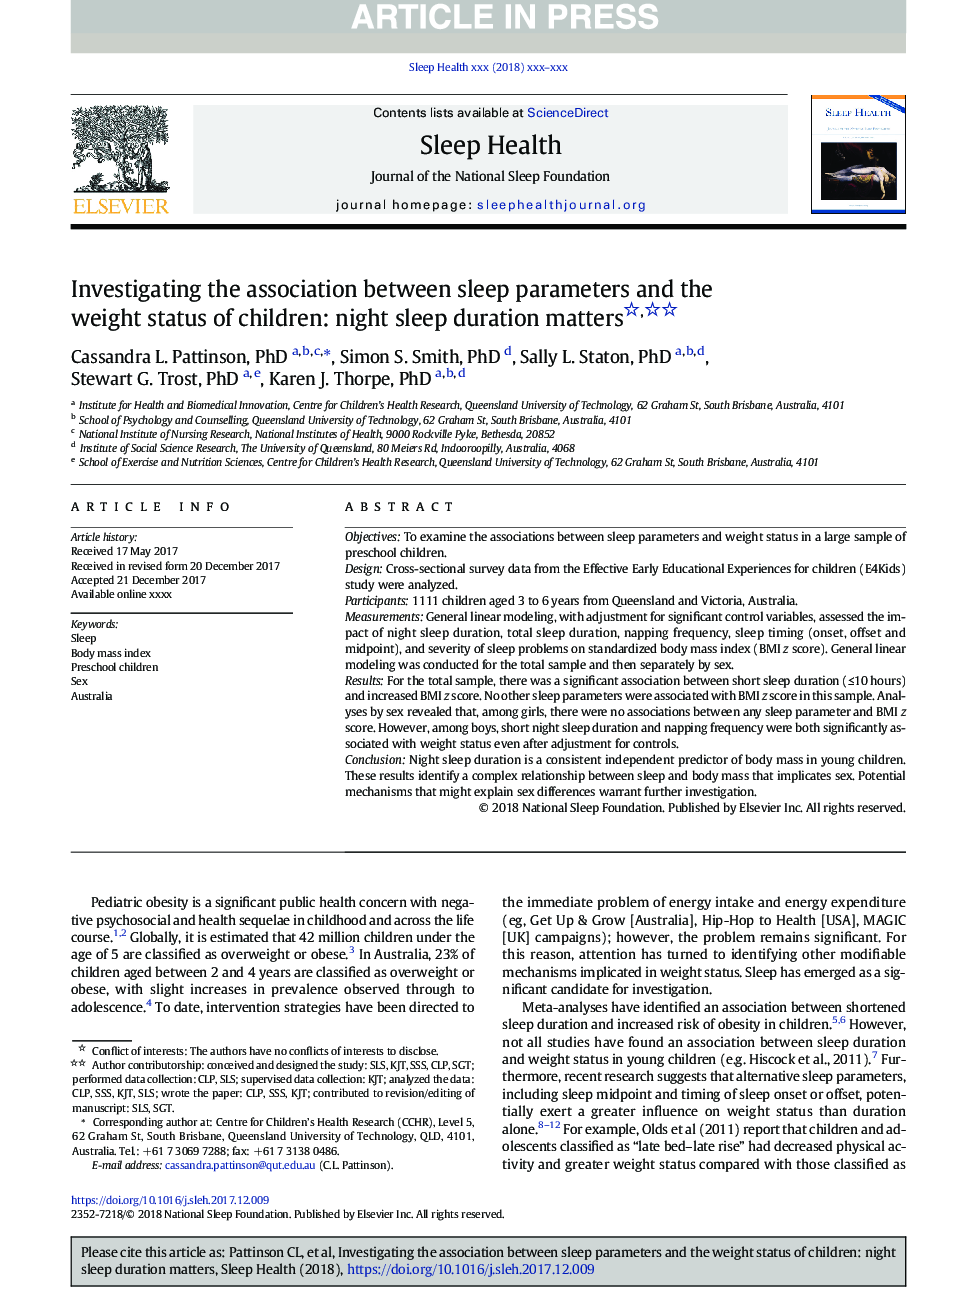 بررسی ارتباط بین پارامترهای خواب و وضعیت وزن کودکان: دوره خواب شبانه مهم است 